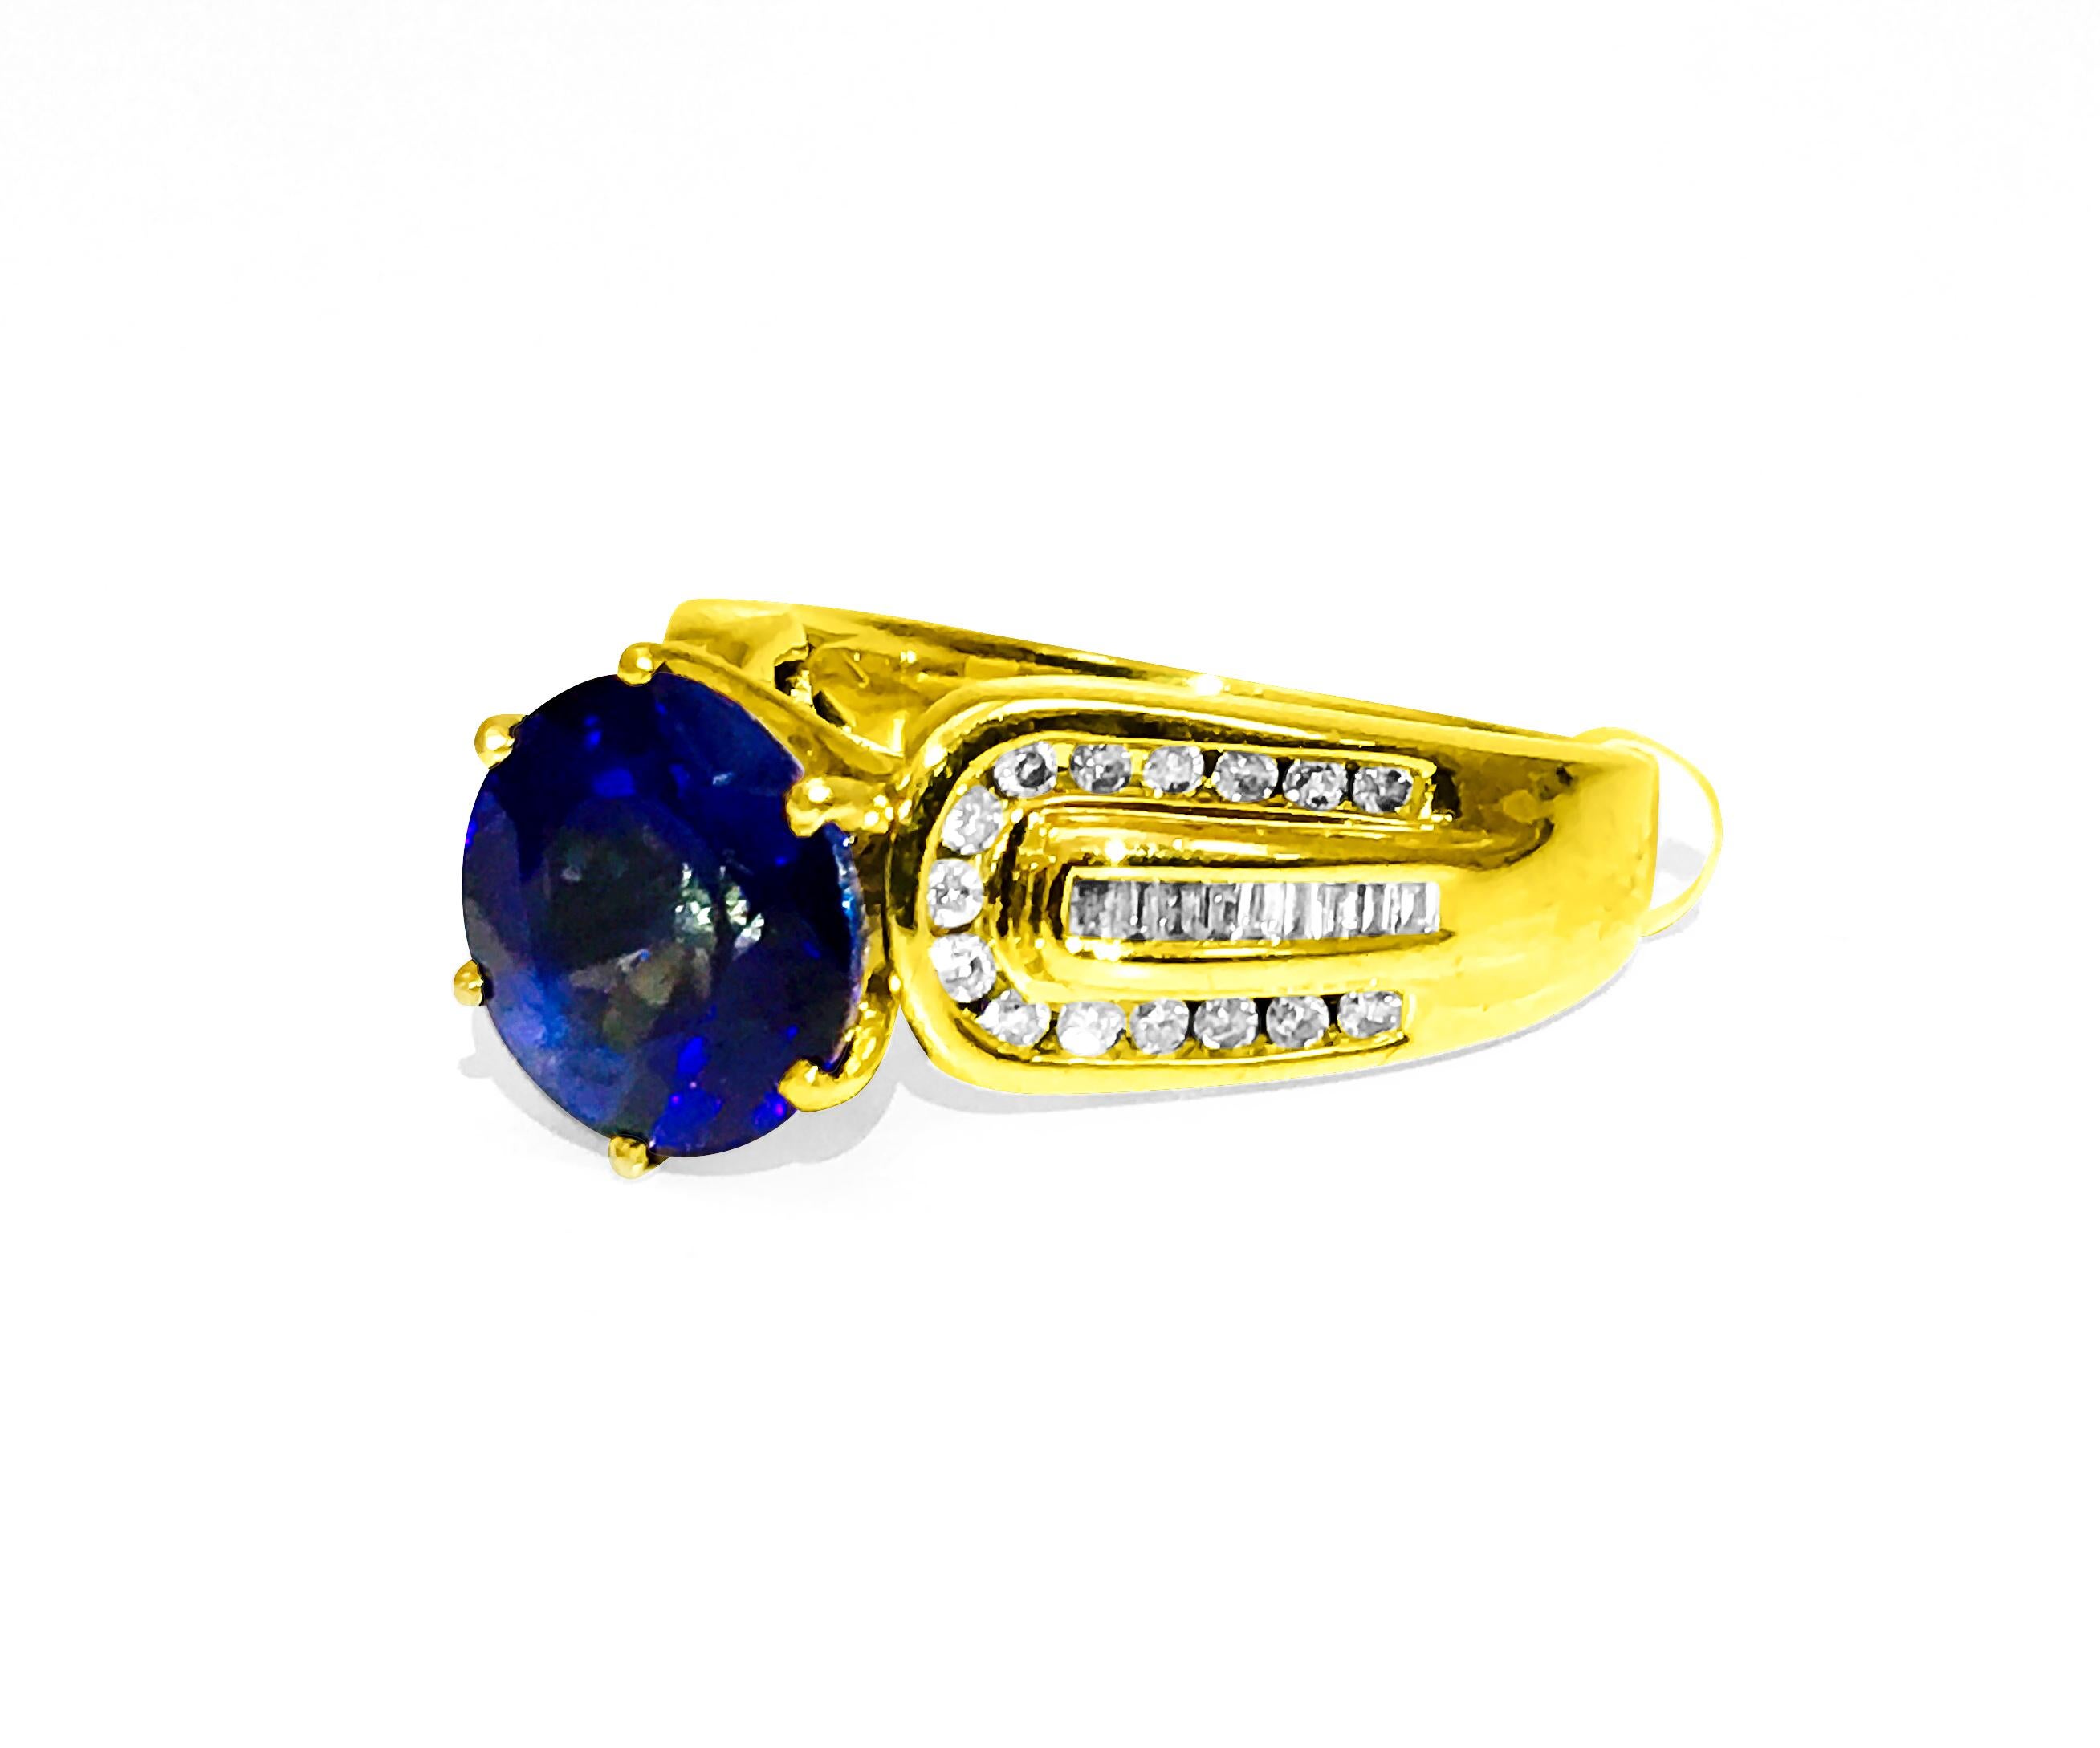 Erhöhen Sie Ihren Stil mit unserem Ring mit blauem Saphir und Diamanten im Vintage-Stil aus 14 Karat Gelbgold. Ein faszinierender 6,00-karätiger blauer Saphir, der in der Erde abgebaut wurde, steht im Mittelpunkt des Geschehens, ergänzt durch runde